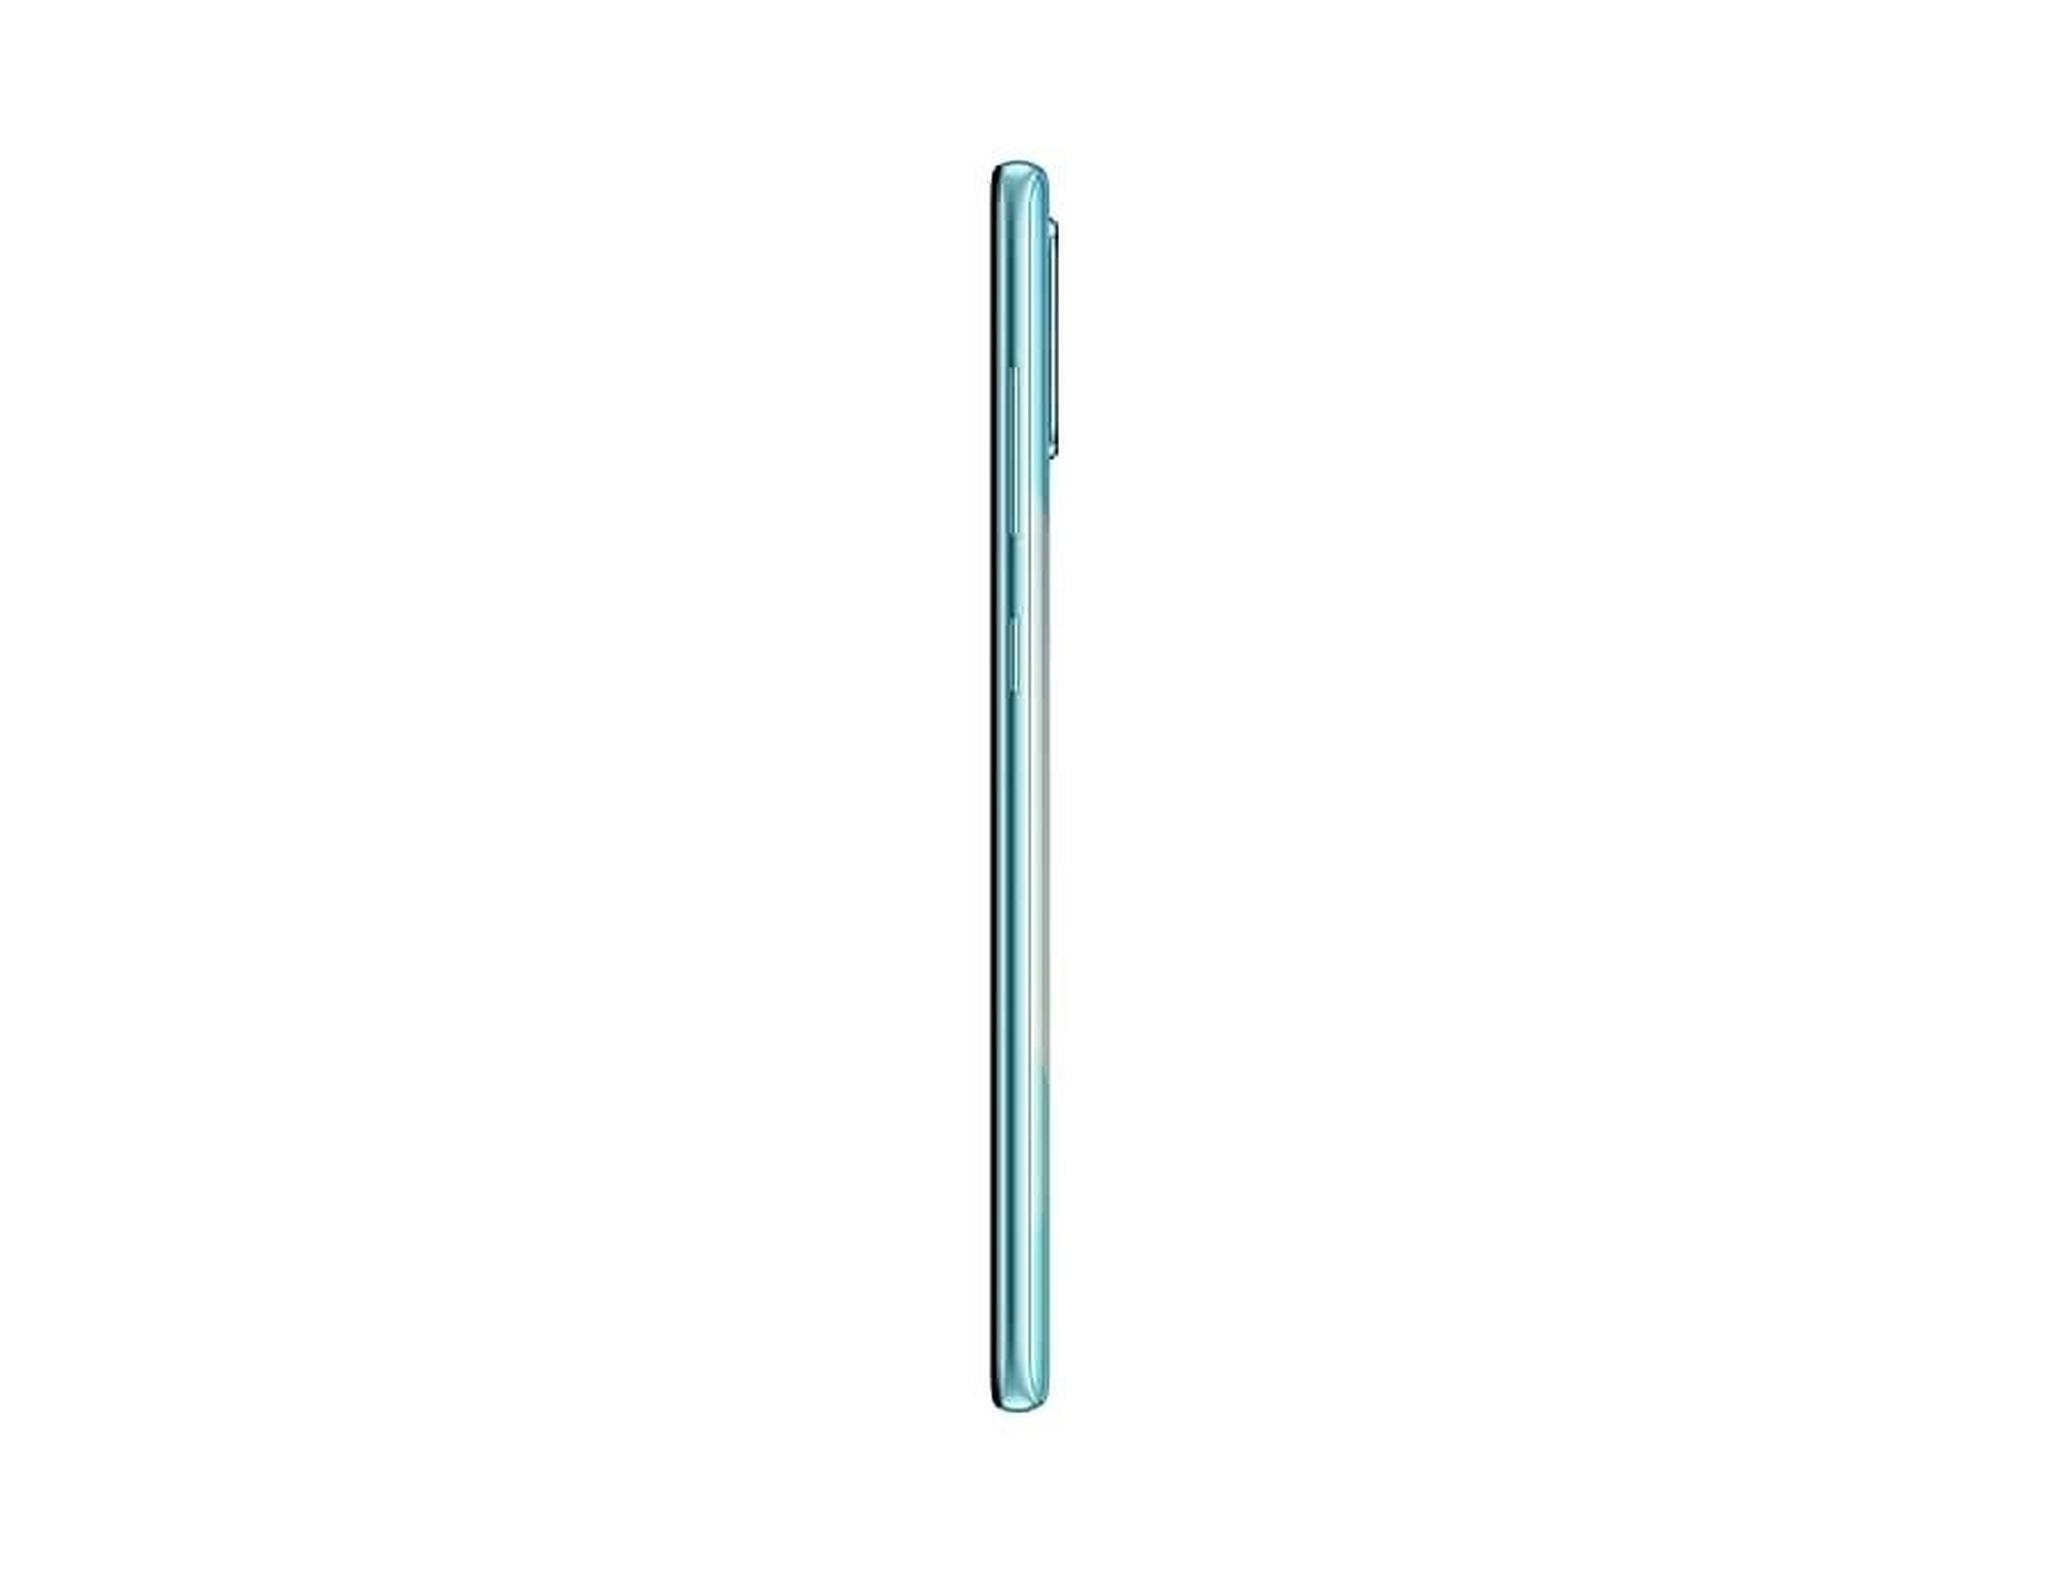 Samsung Galaxy A71 128GB Phone - Blue